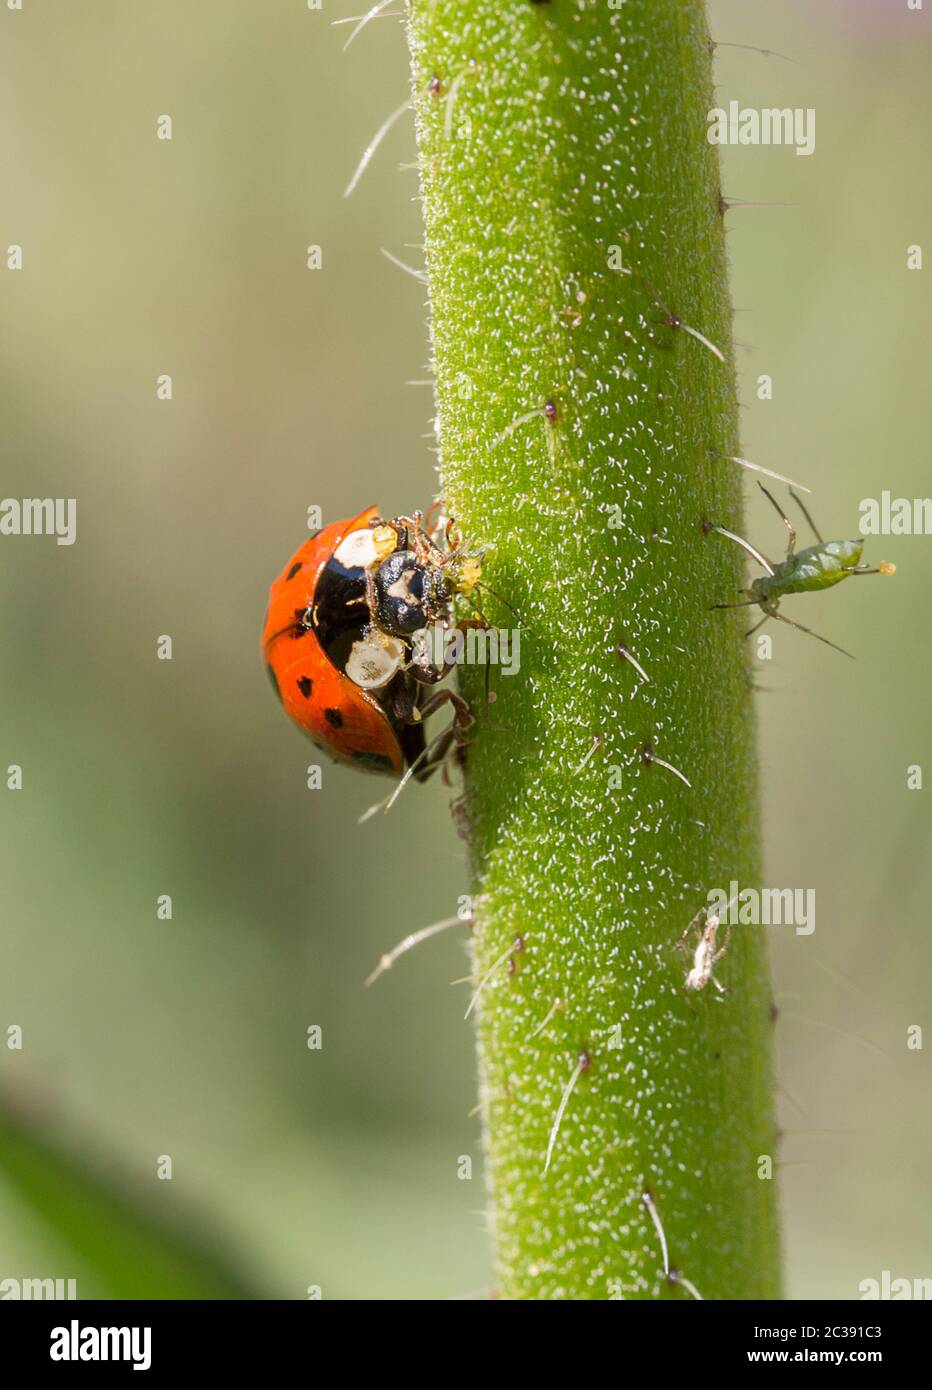 Rote Siebenfleckig Marienkäfer, die sich auf Blattläuse füttern. Weißer Fleck auf jeder Seite hinter dem Kopf und drei schwarze Flecken auf jeder Seite mit einem geteilten Fleck in der Mitte vorne Stockfoto